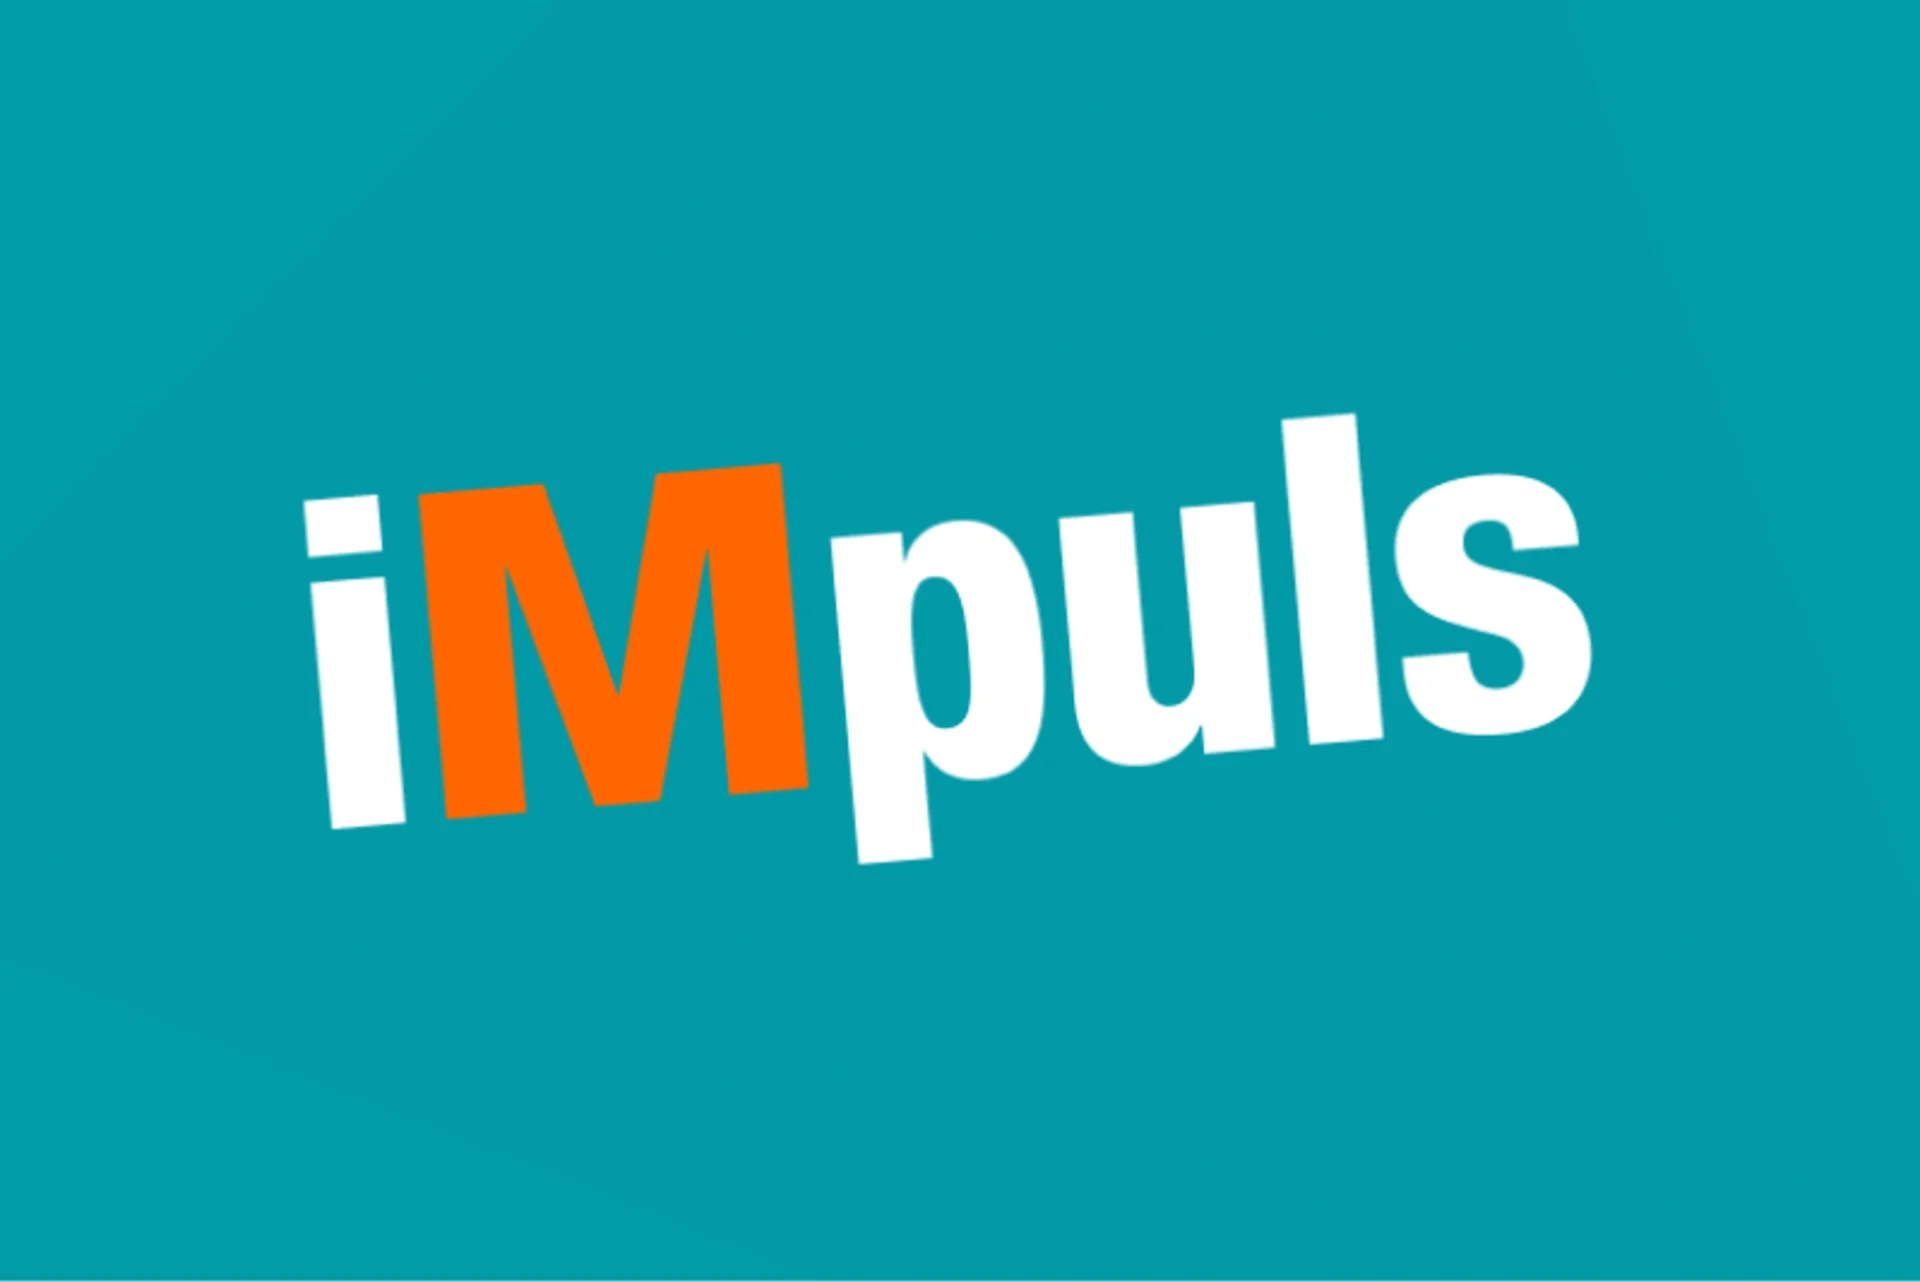 Logo iMpuls on turquoise background.